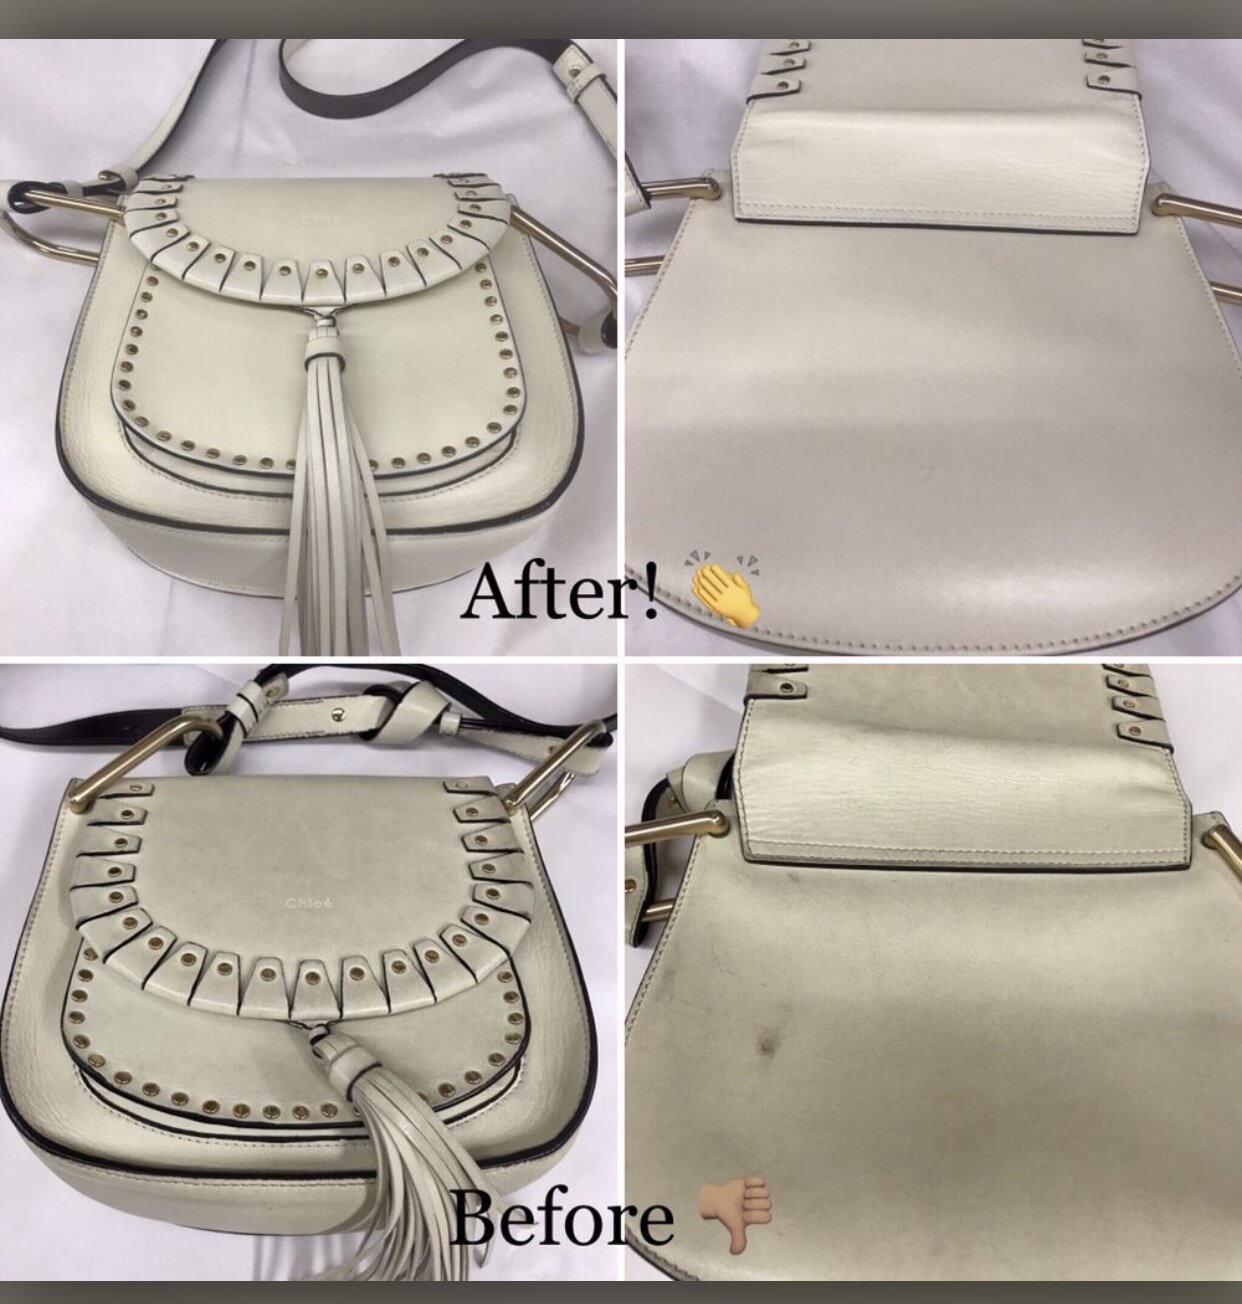 Re-Dye Kit — Factotum Handbag and Shoe Leather Repairs